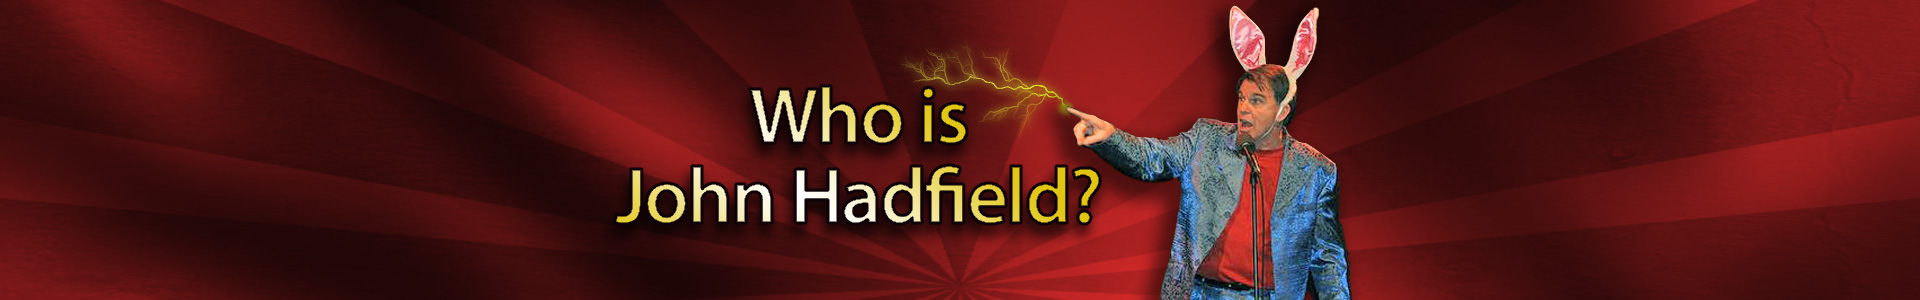 Meet John Hadfield